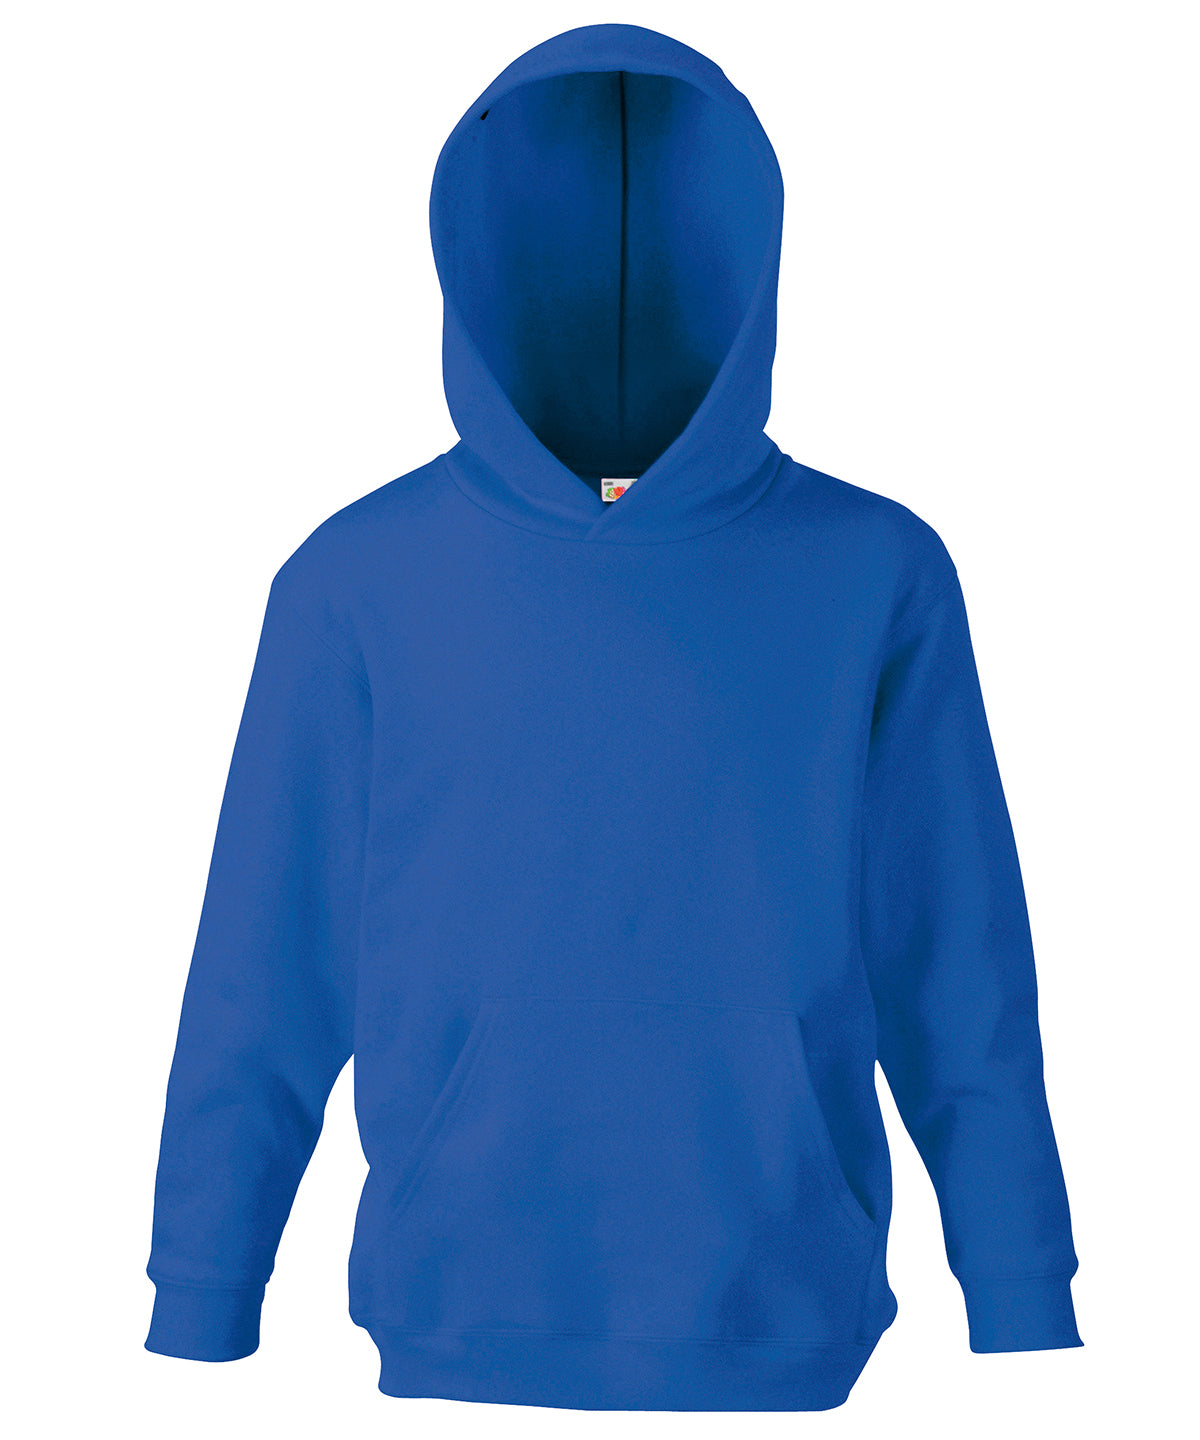 Personalised Hoodies - Bottle Fruit of the Loom Kids classic hooded sweatshirt